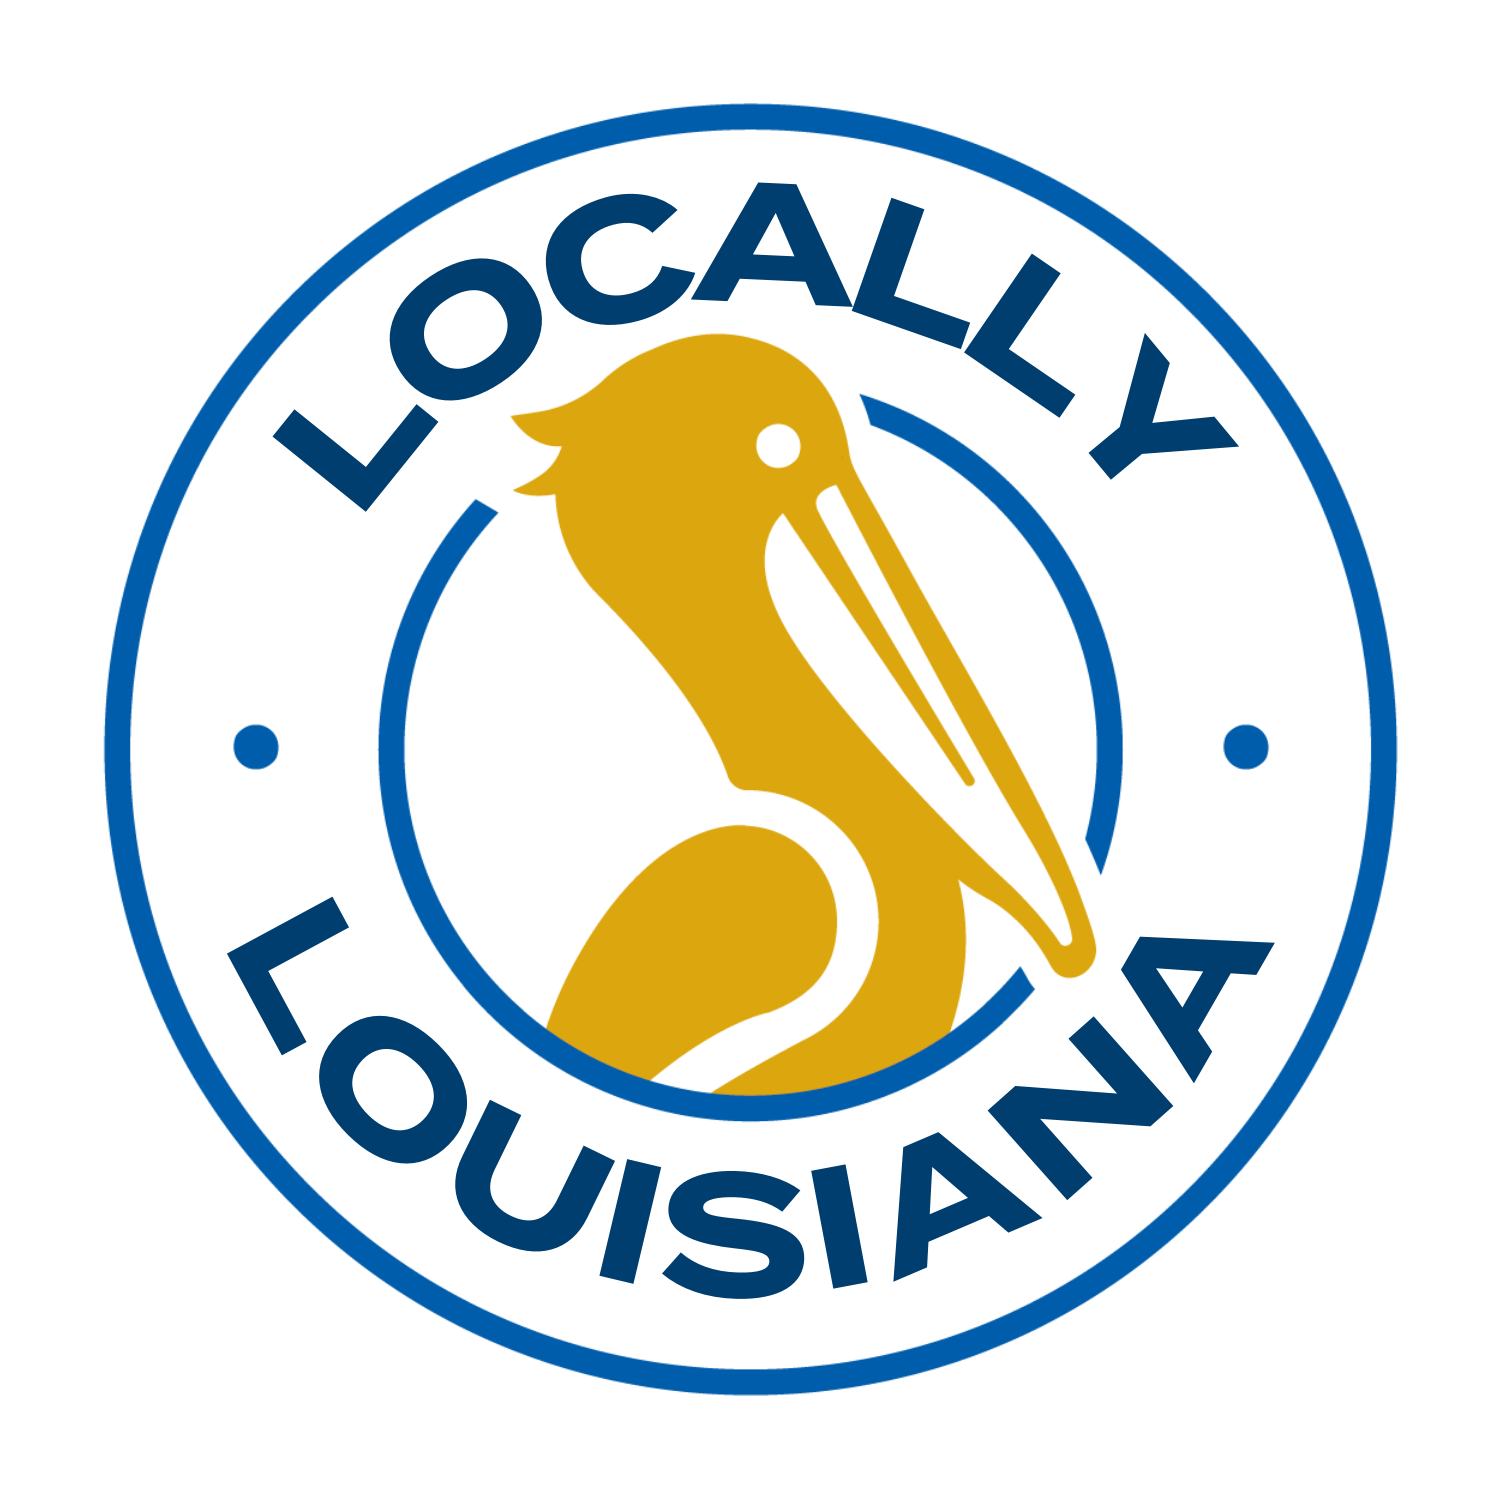 Locally Louisiana Image